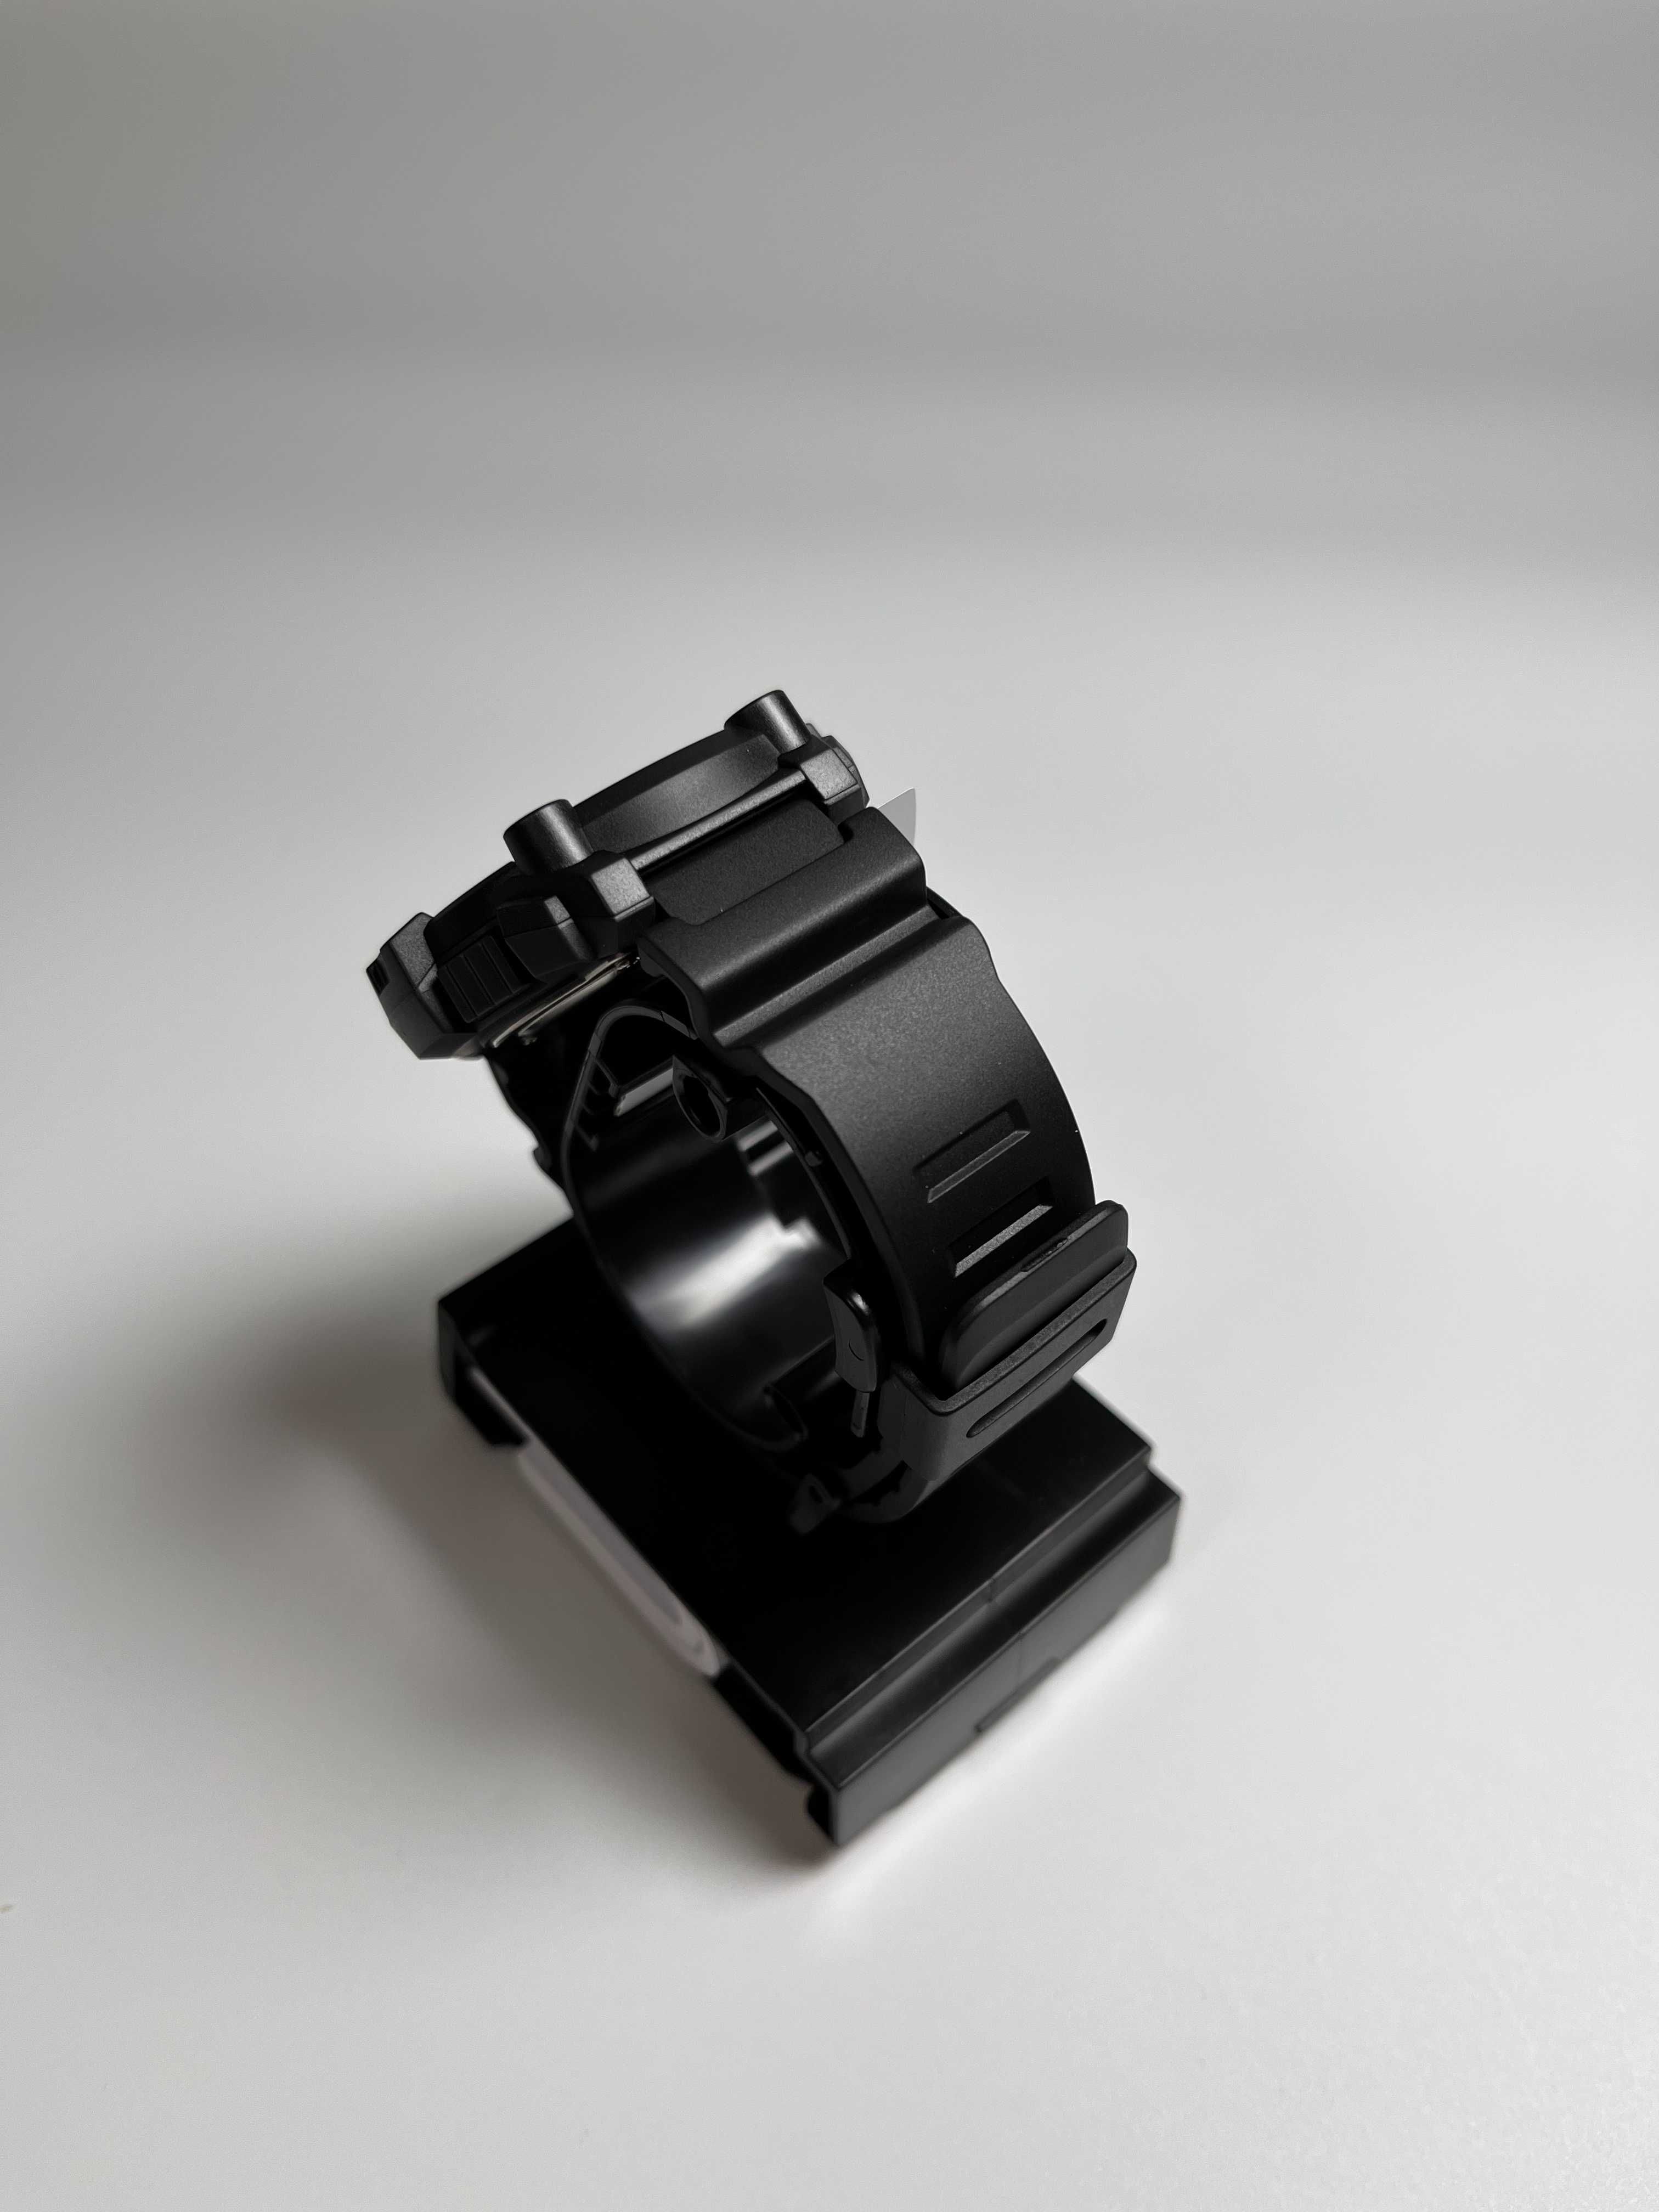 Casio WS-1300H-1AVCF, годинник касіо спортивний, часы касио черные